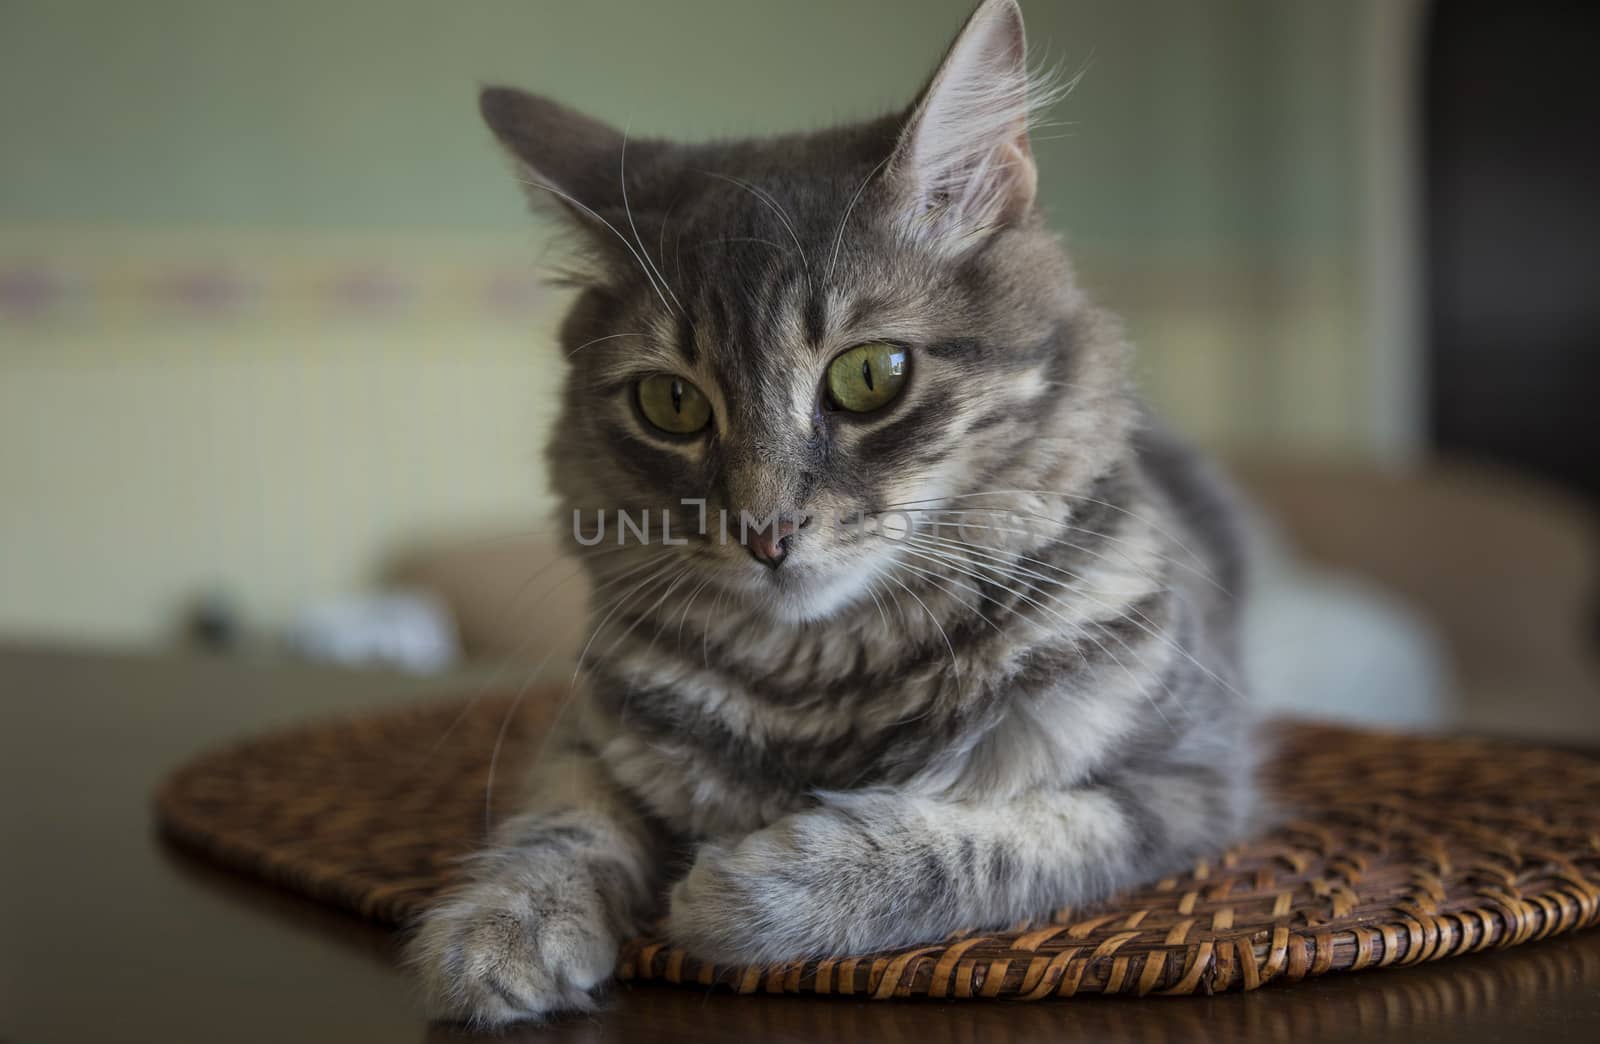 a cute gray cat at home by bernanamoglu